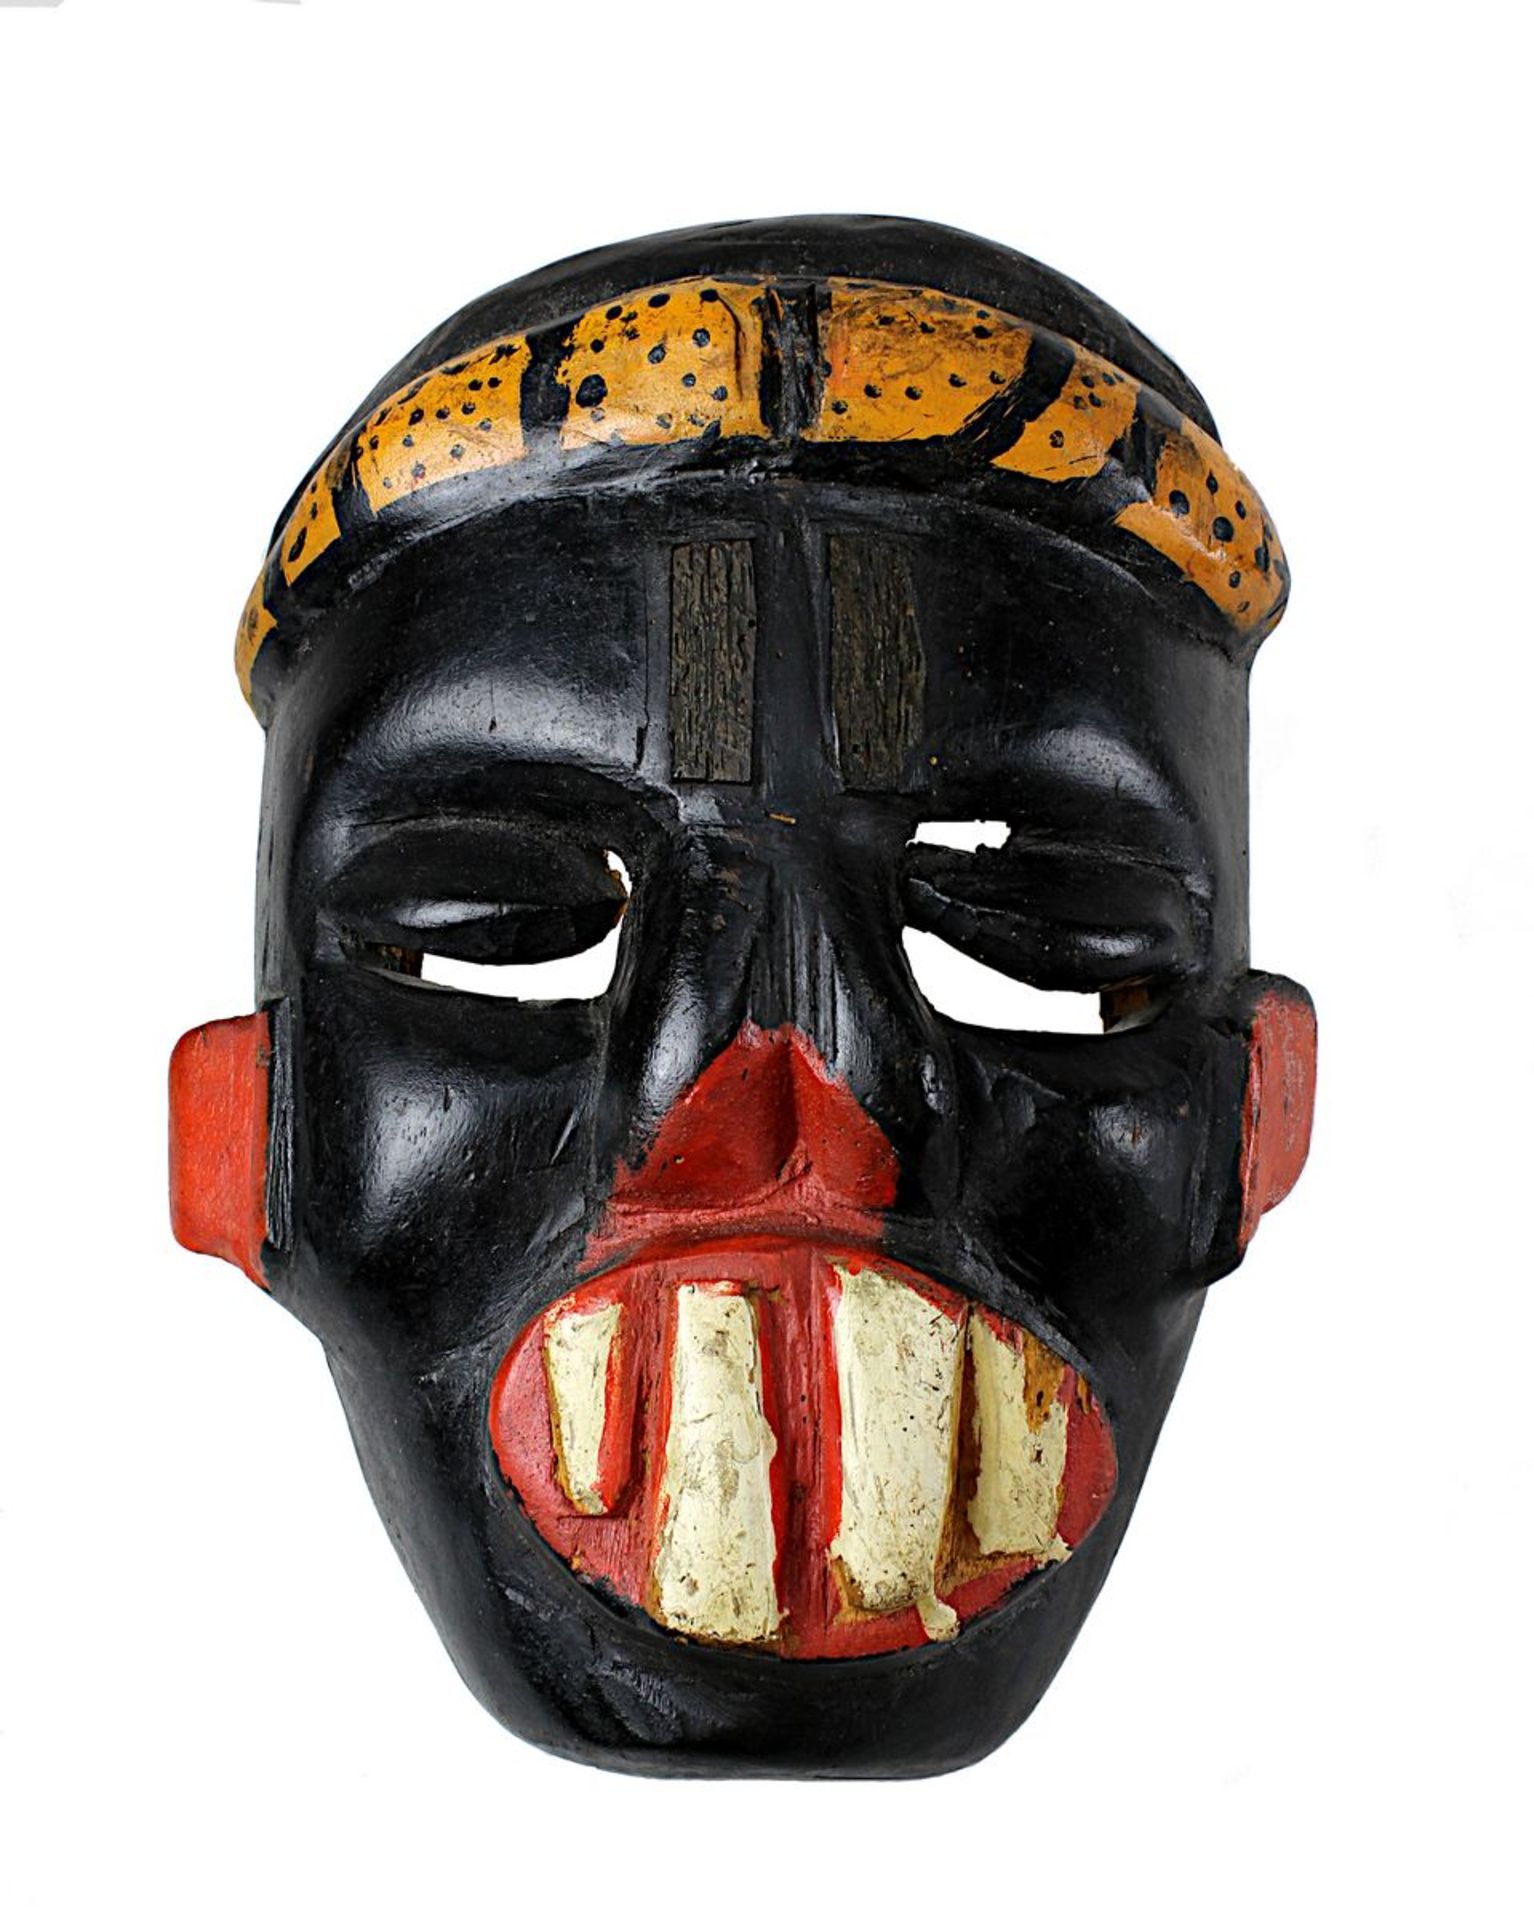 Farbige Maske, groteskes Gesicht mit gespaltener Nase, roten Ohren und übergroßen Zähnen, wohl